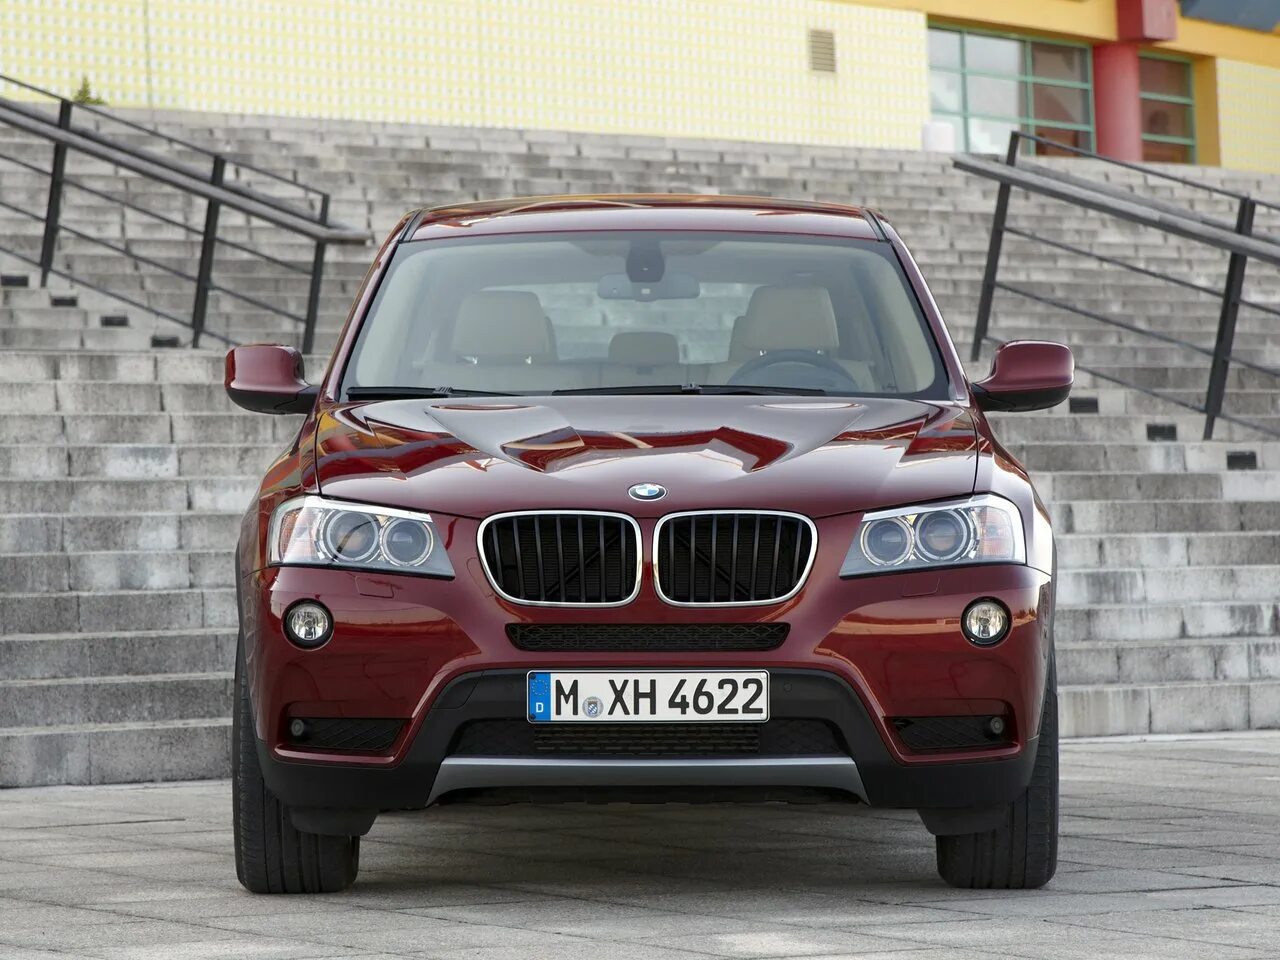 BMW x3 f25. BMW x3 II (f25). BMW x3 красная. BMW x3 xdrive20d. Бмв х3 спб